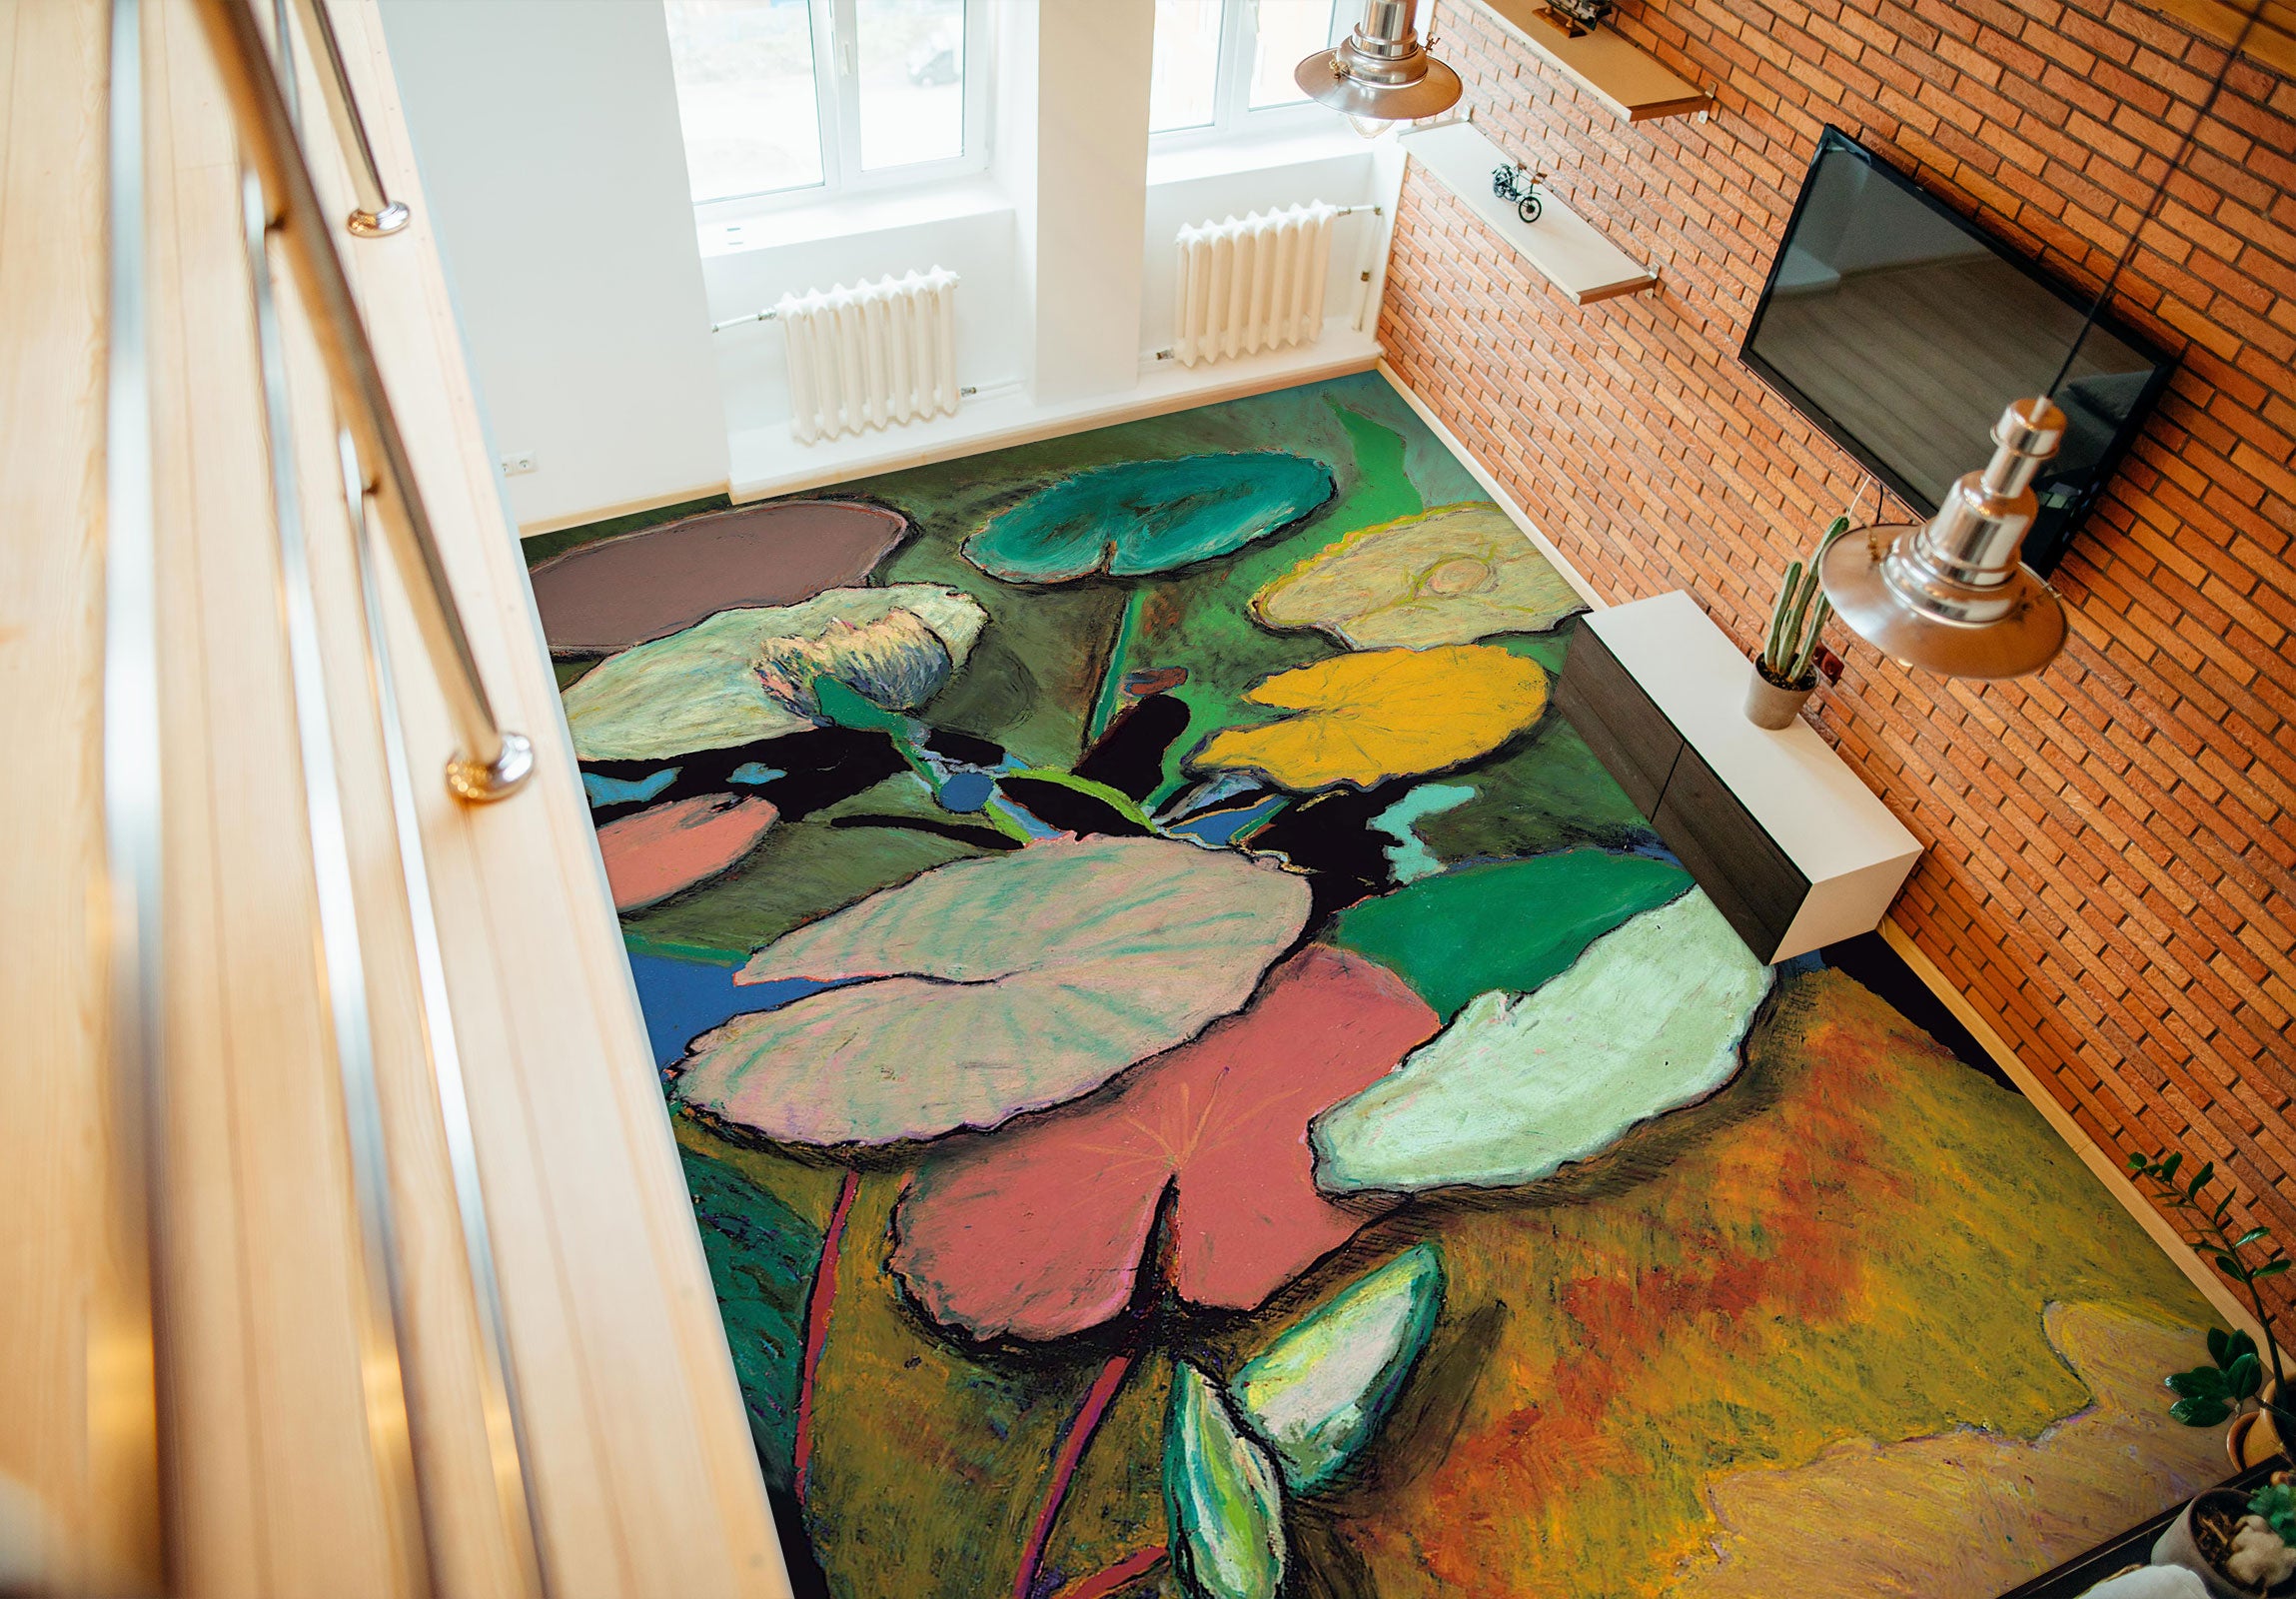 3D Lotus Leaf Painting 96127 Allan P. Friedlander Floor Mural